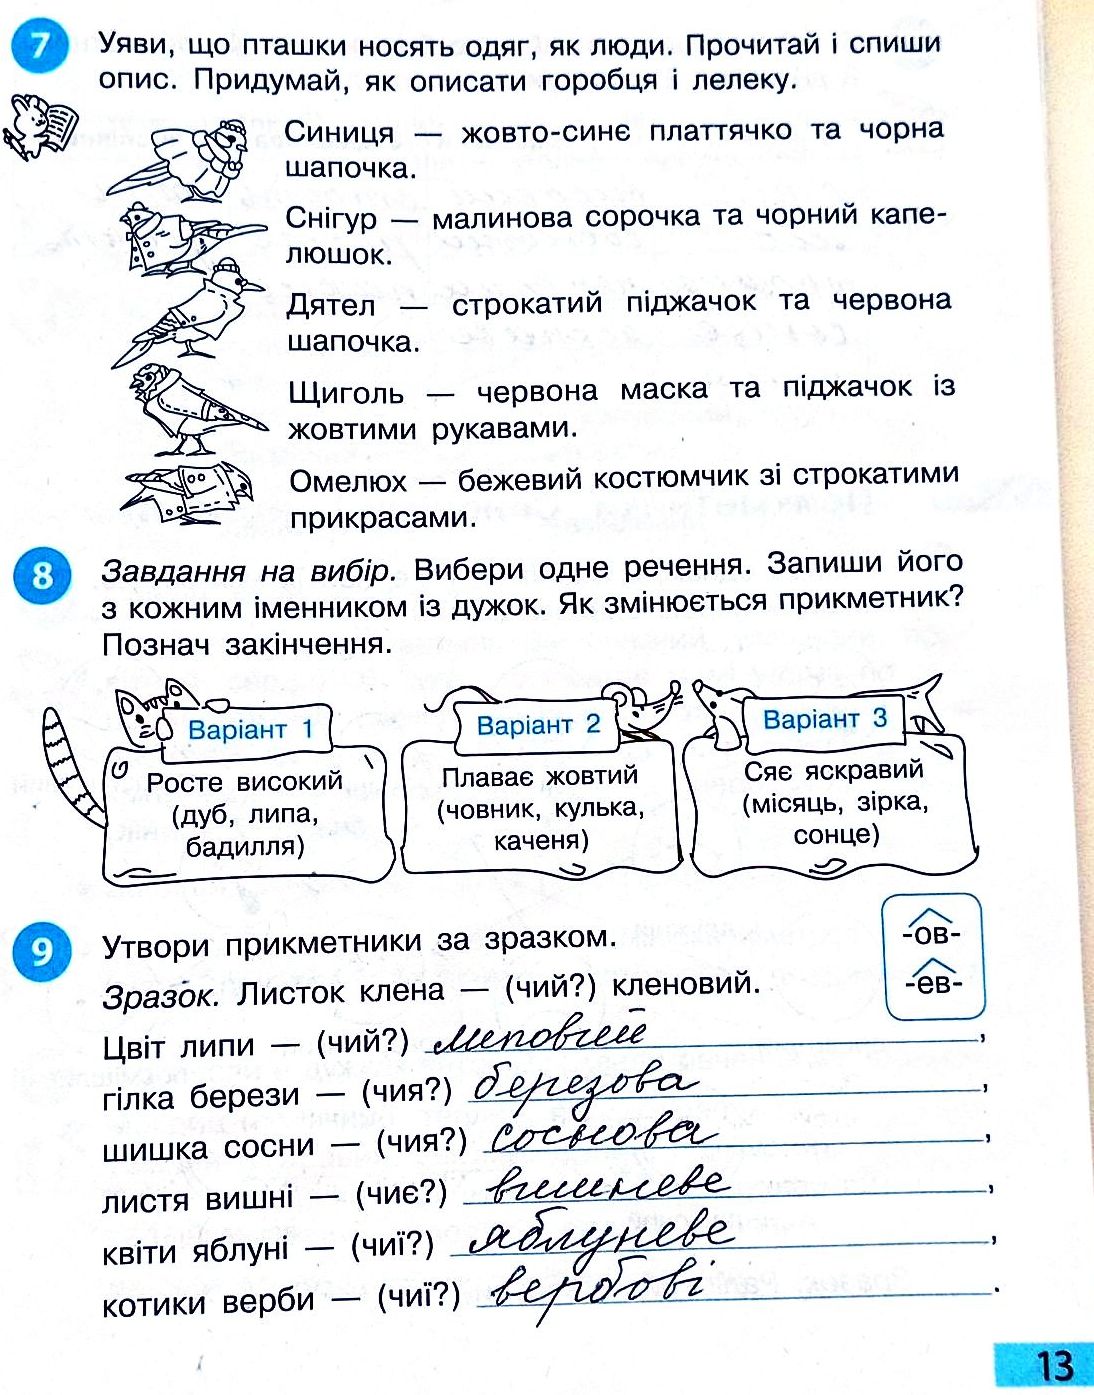 Сторінка 13 частина 2 гдз 3 клас робочий зошит українська мова Большакова